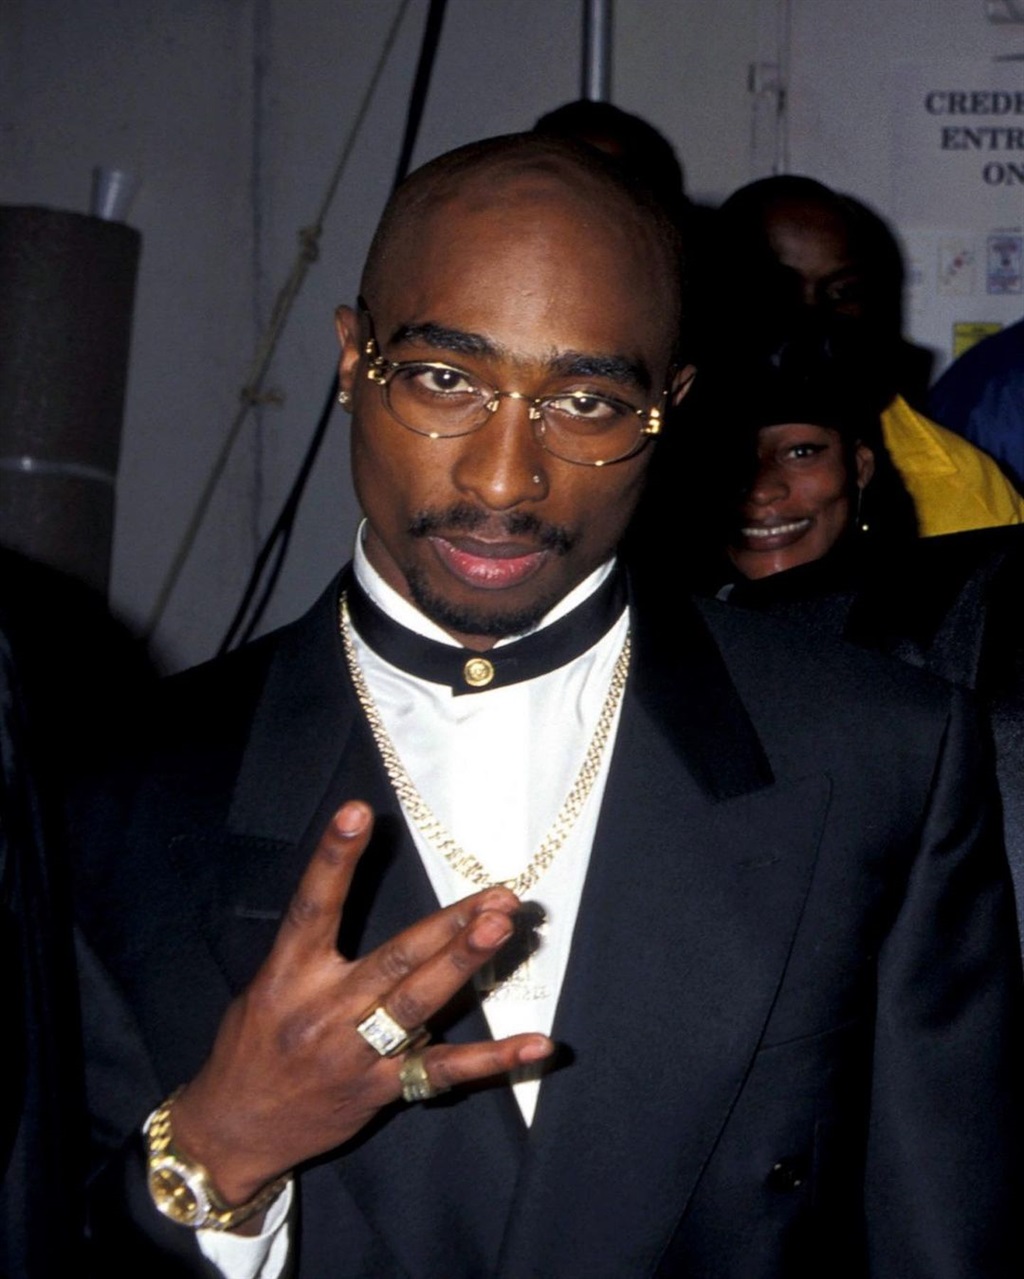 Tupac Shakur at the 1996 American Music Awards.